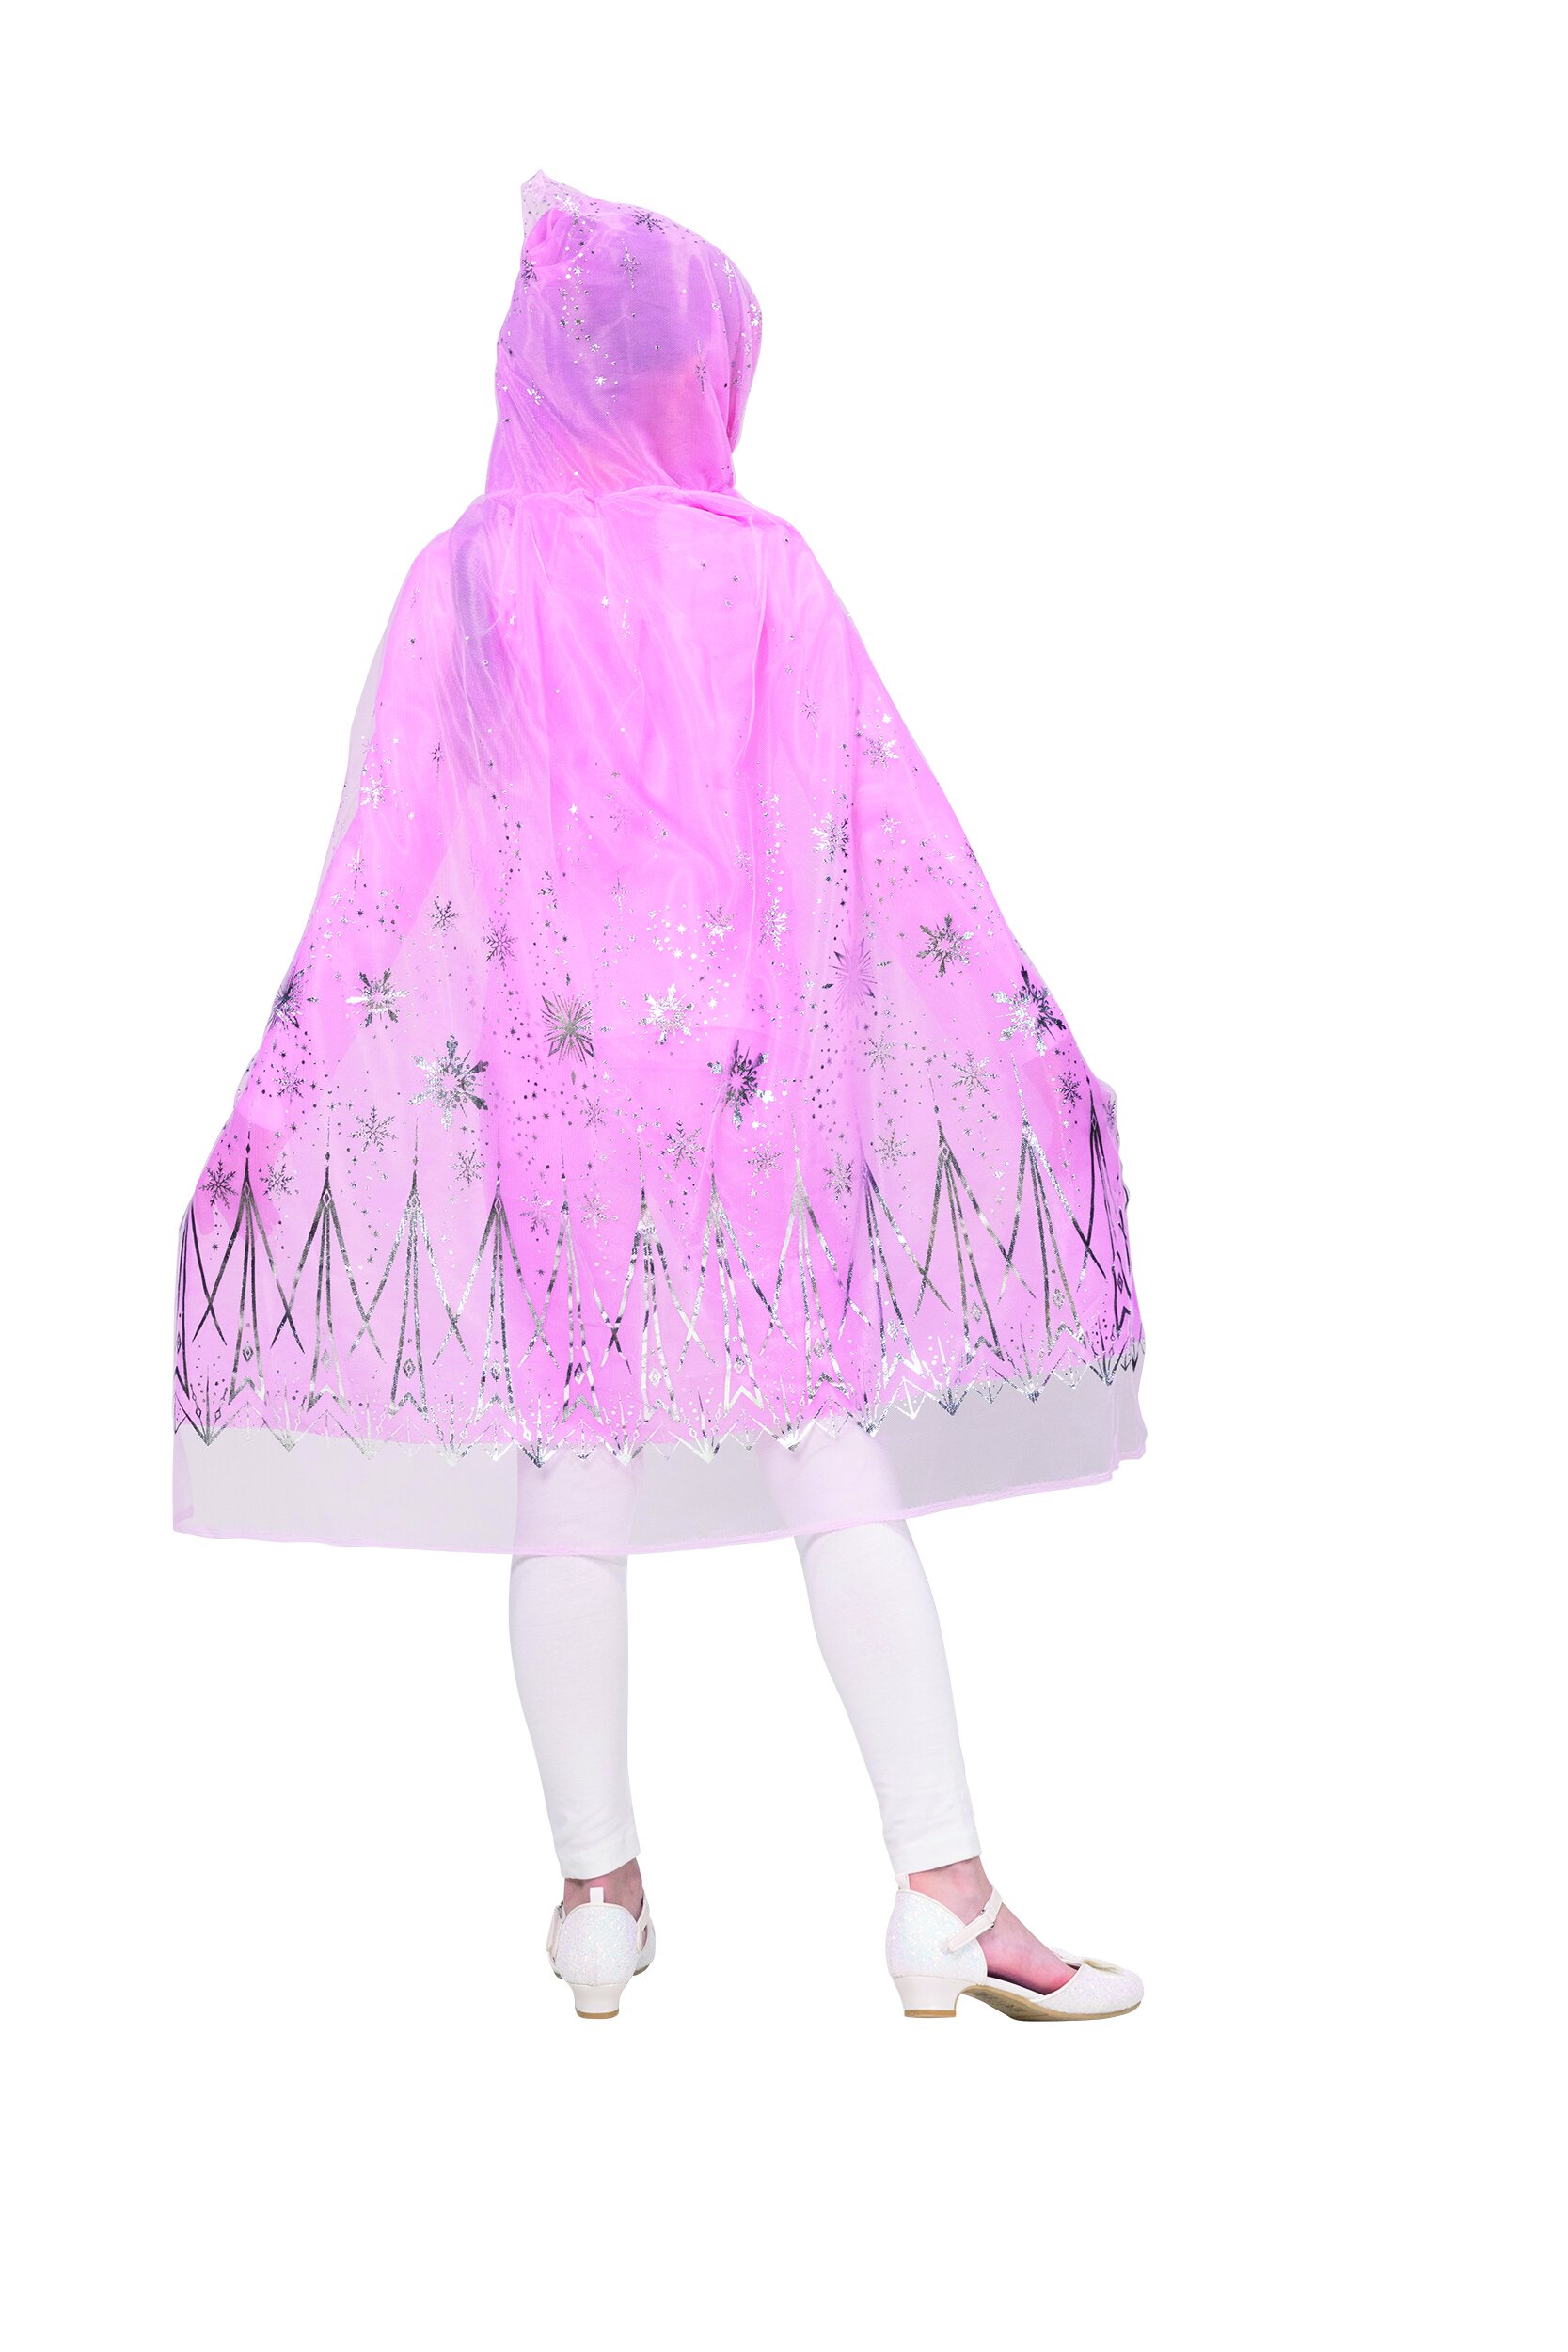 Prinzessinnencape mit Kapuze rosa